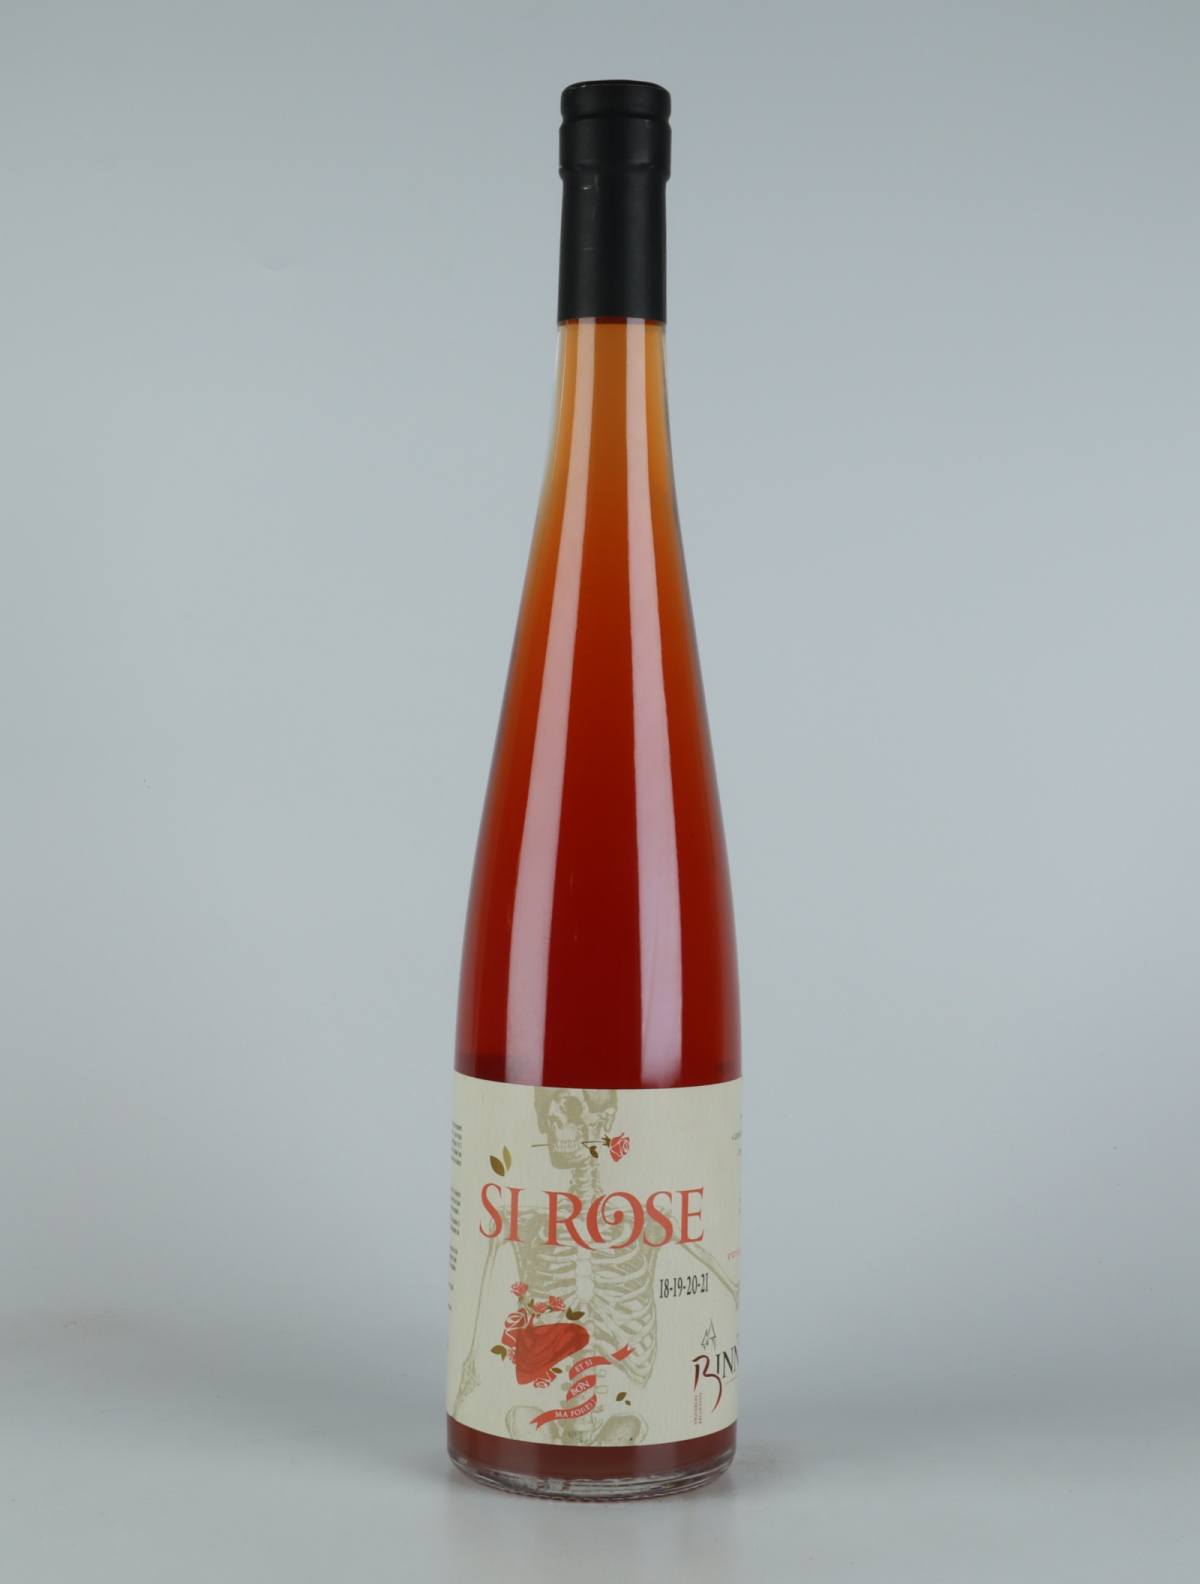 A bottle N.V. Si Rose (18/19/20/21) Orange wine from Domaine Christian Binner, Alsace in France